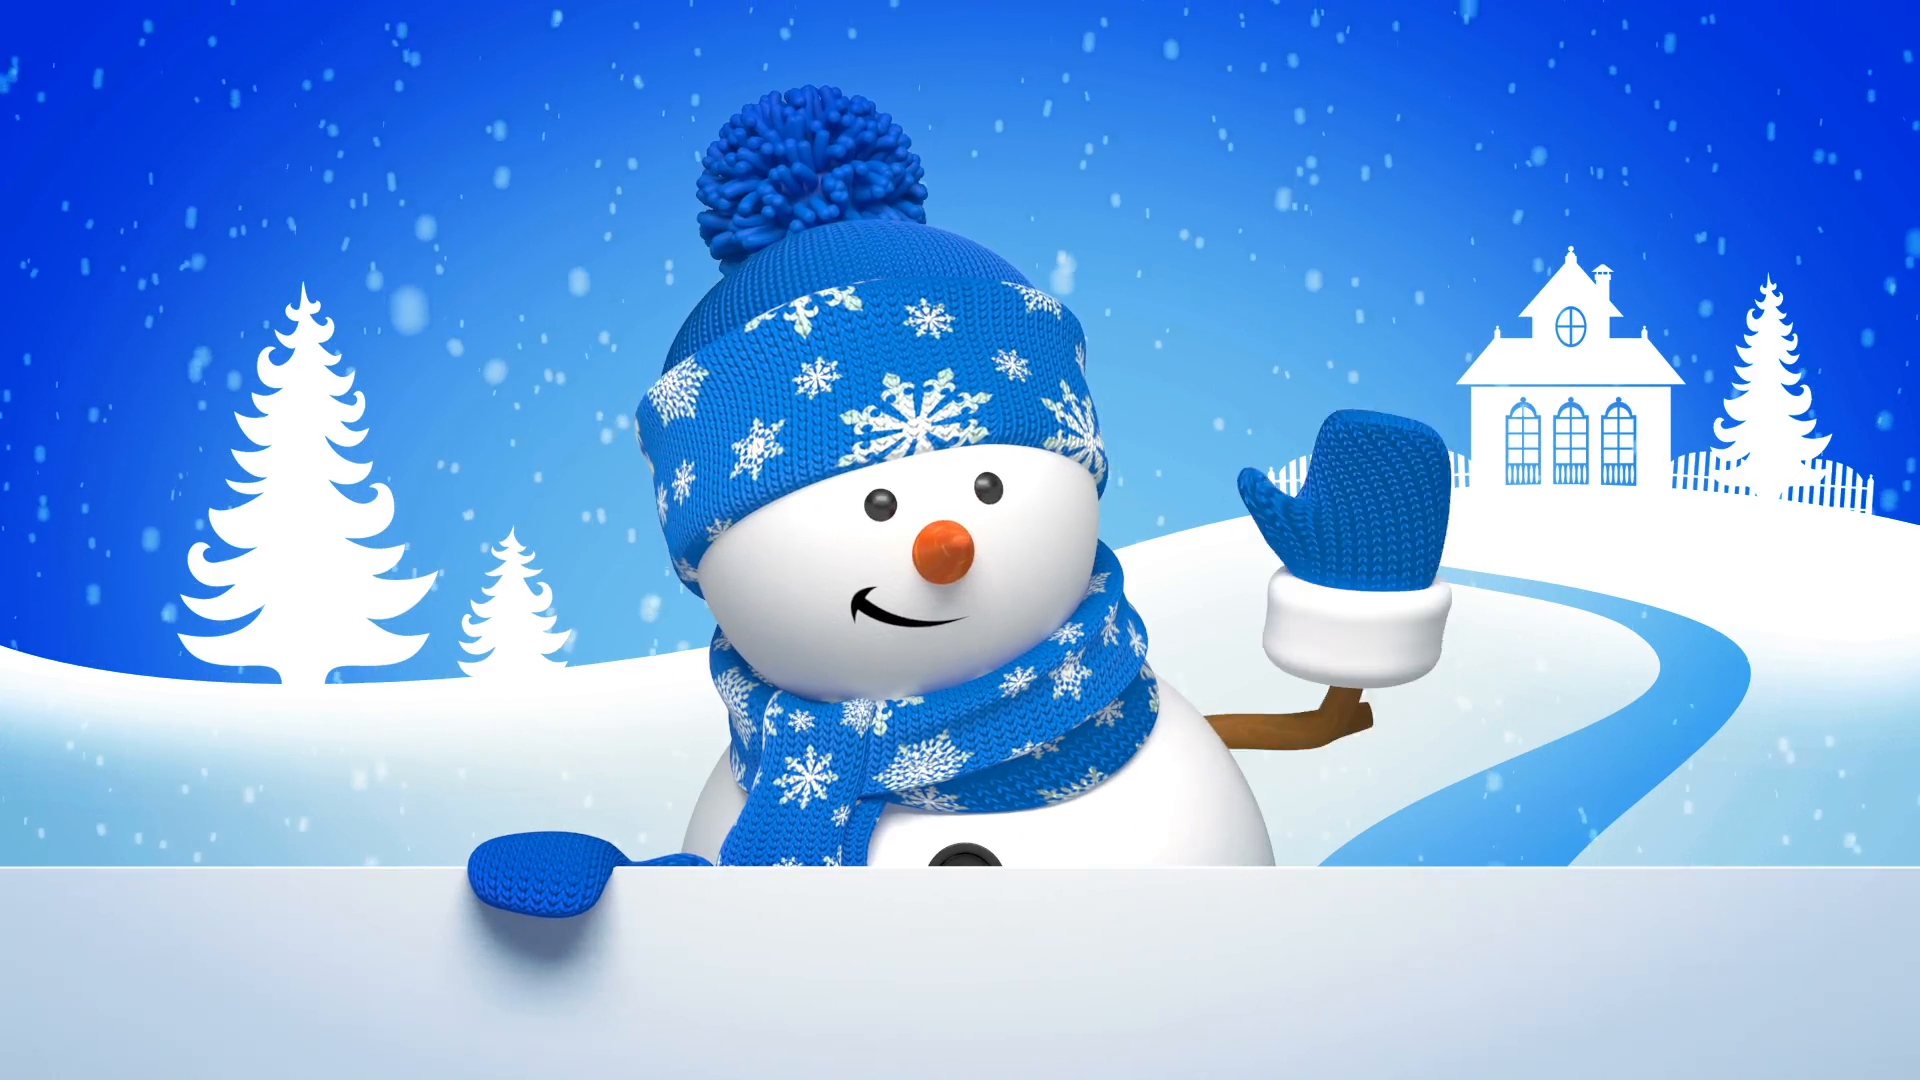 눈사람 벽지 hd,눈사람,눈,겨울,하늘,크리스마스 이브